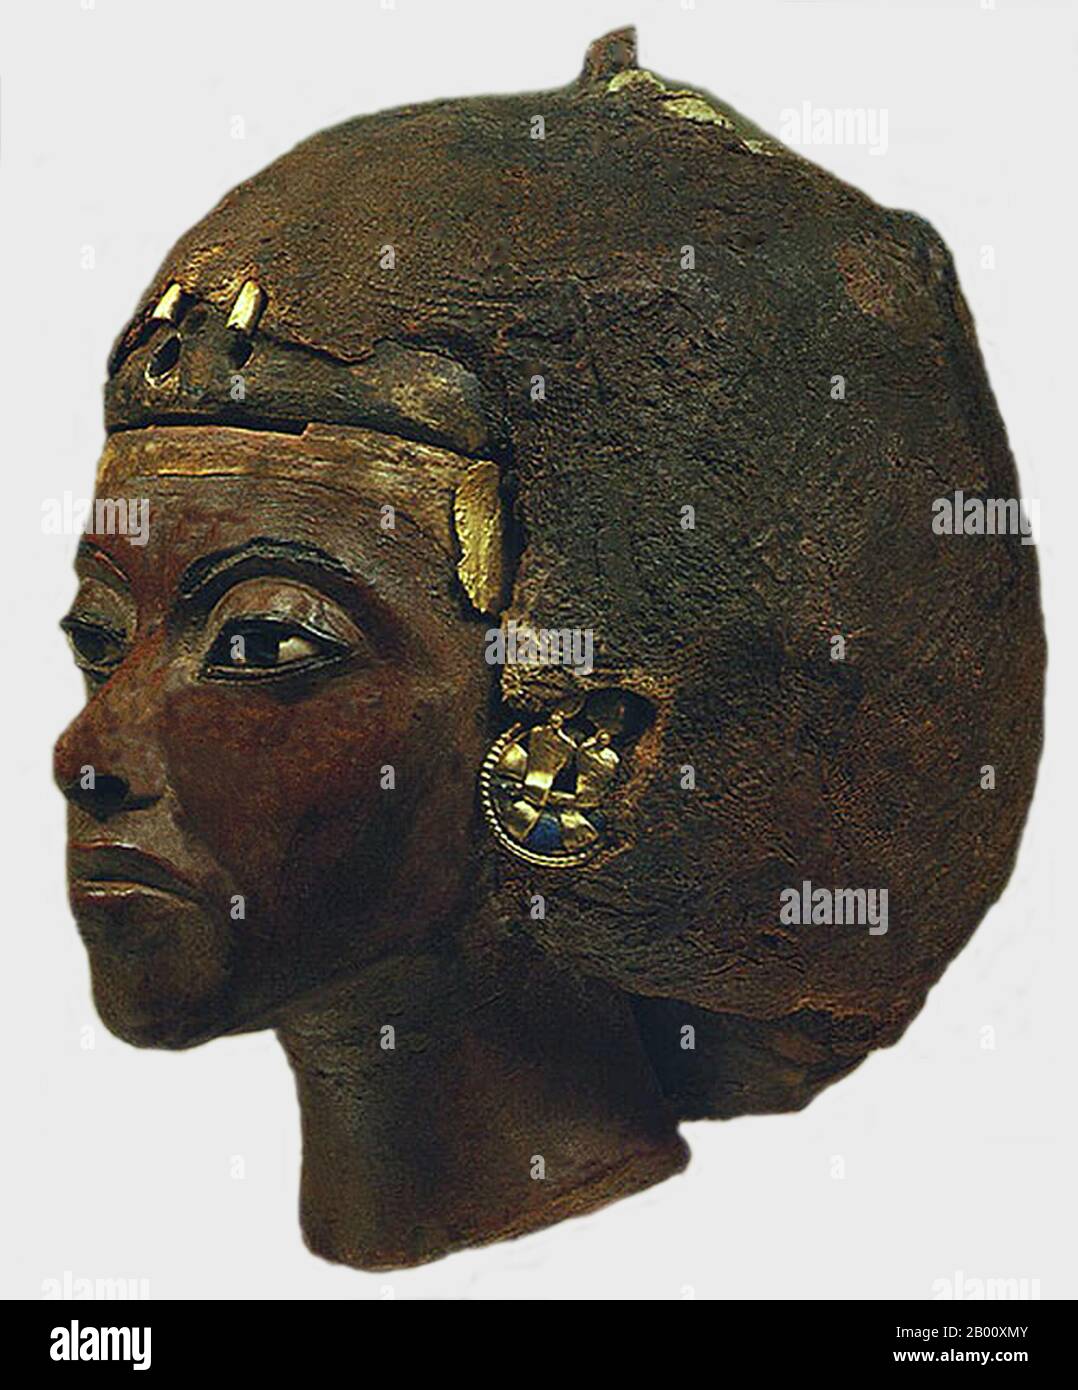 Ägypten: Tiye (1398-1338 v. Chr.), große Königin des Pharao Amenhotep III der 18. Dynastie (r.c. 1388-51 BCE), c. 1355 BCE. Tiye (c. 1398 v. Chr. – 1338 v. Chr., auch geschrieben Taia, Tiy und Tiyi) war die Tochter von Yuya und Tjuyu (auch geschrieben Thuyu). Sie wurde die große königliche Frau des ägyptischen pharao Amenhotep III und Matriarchin der Amarna Familie, aus der viele Mitglieder der königlichen Familie des alten Ägypten geboren wurden. Tiye's Vater, Yuya, war ein wohlhabender Grundbesitzer aus der oberägyptischen Stadt Akhmin, wo er als Priester und Superintendent von Ochsen diente. Stockfoto